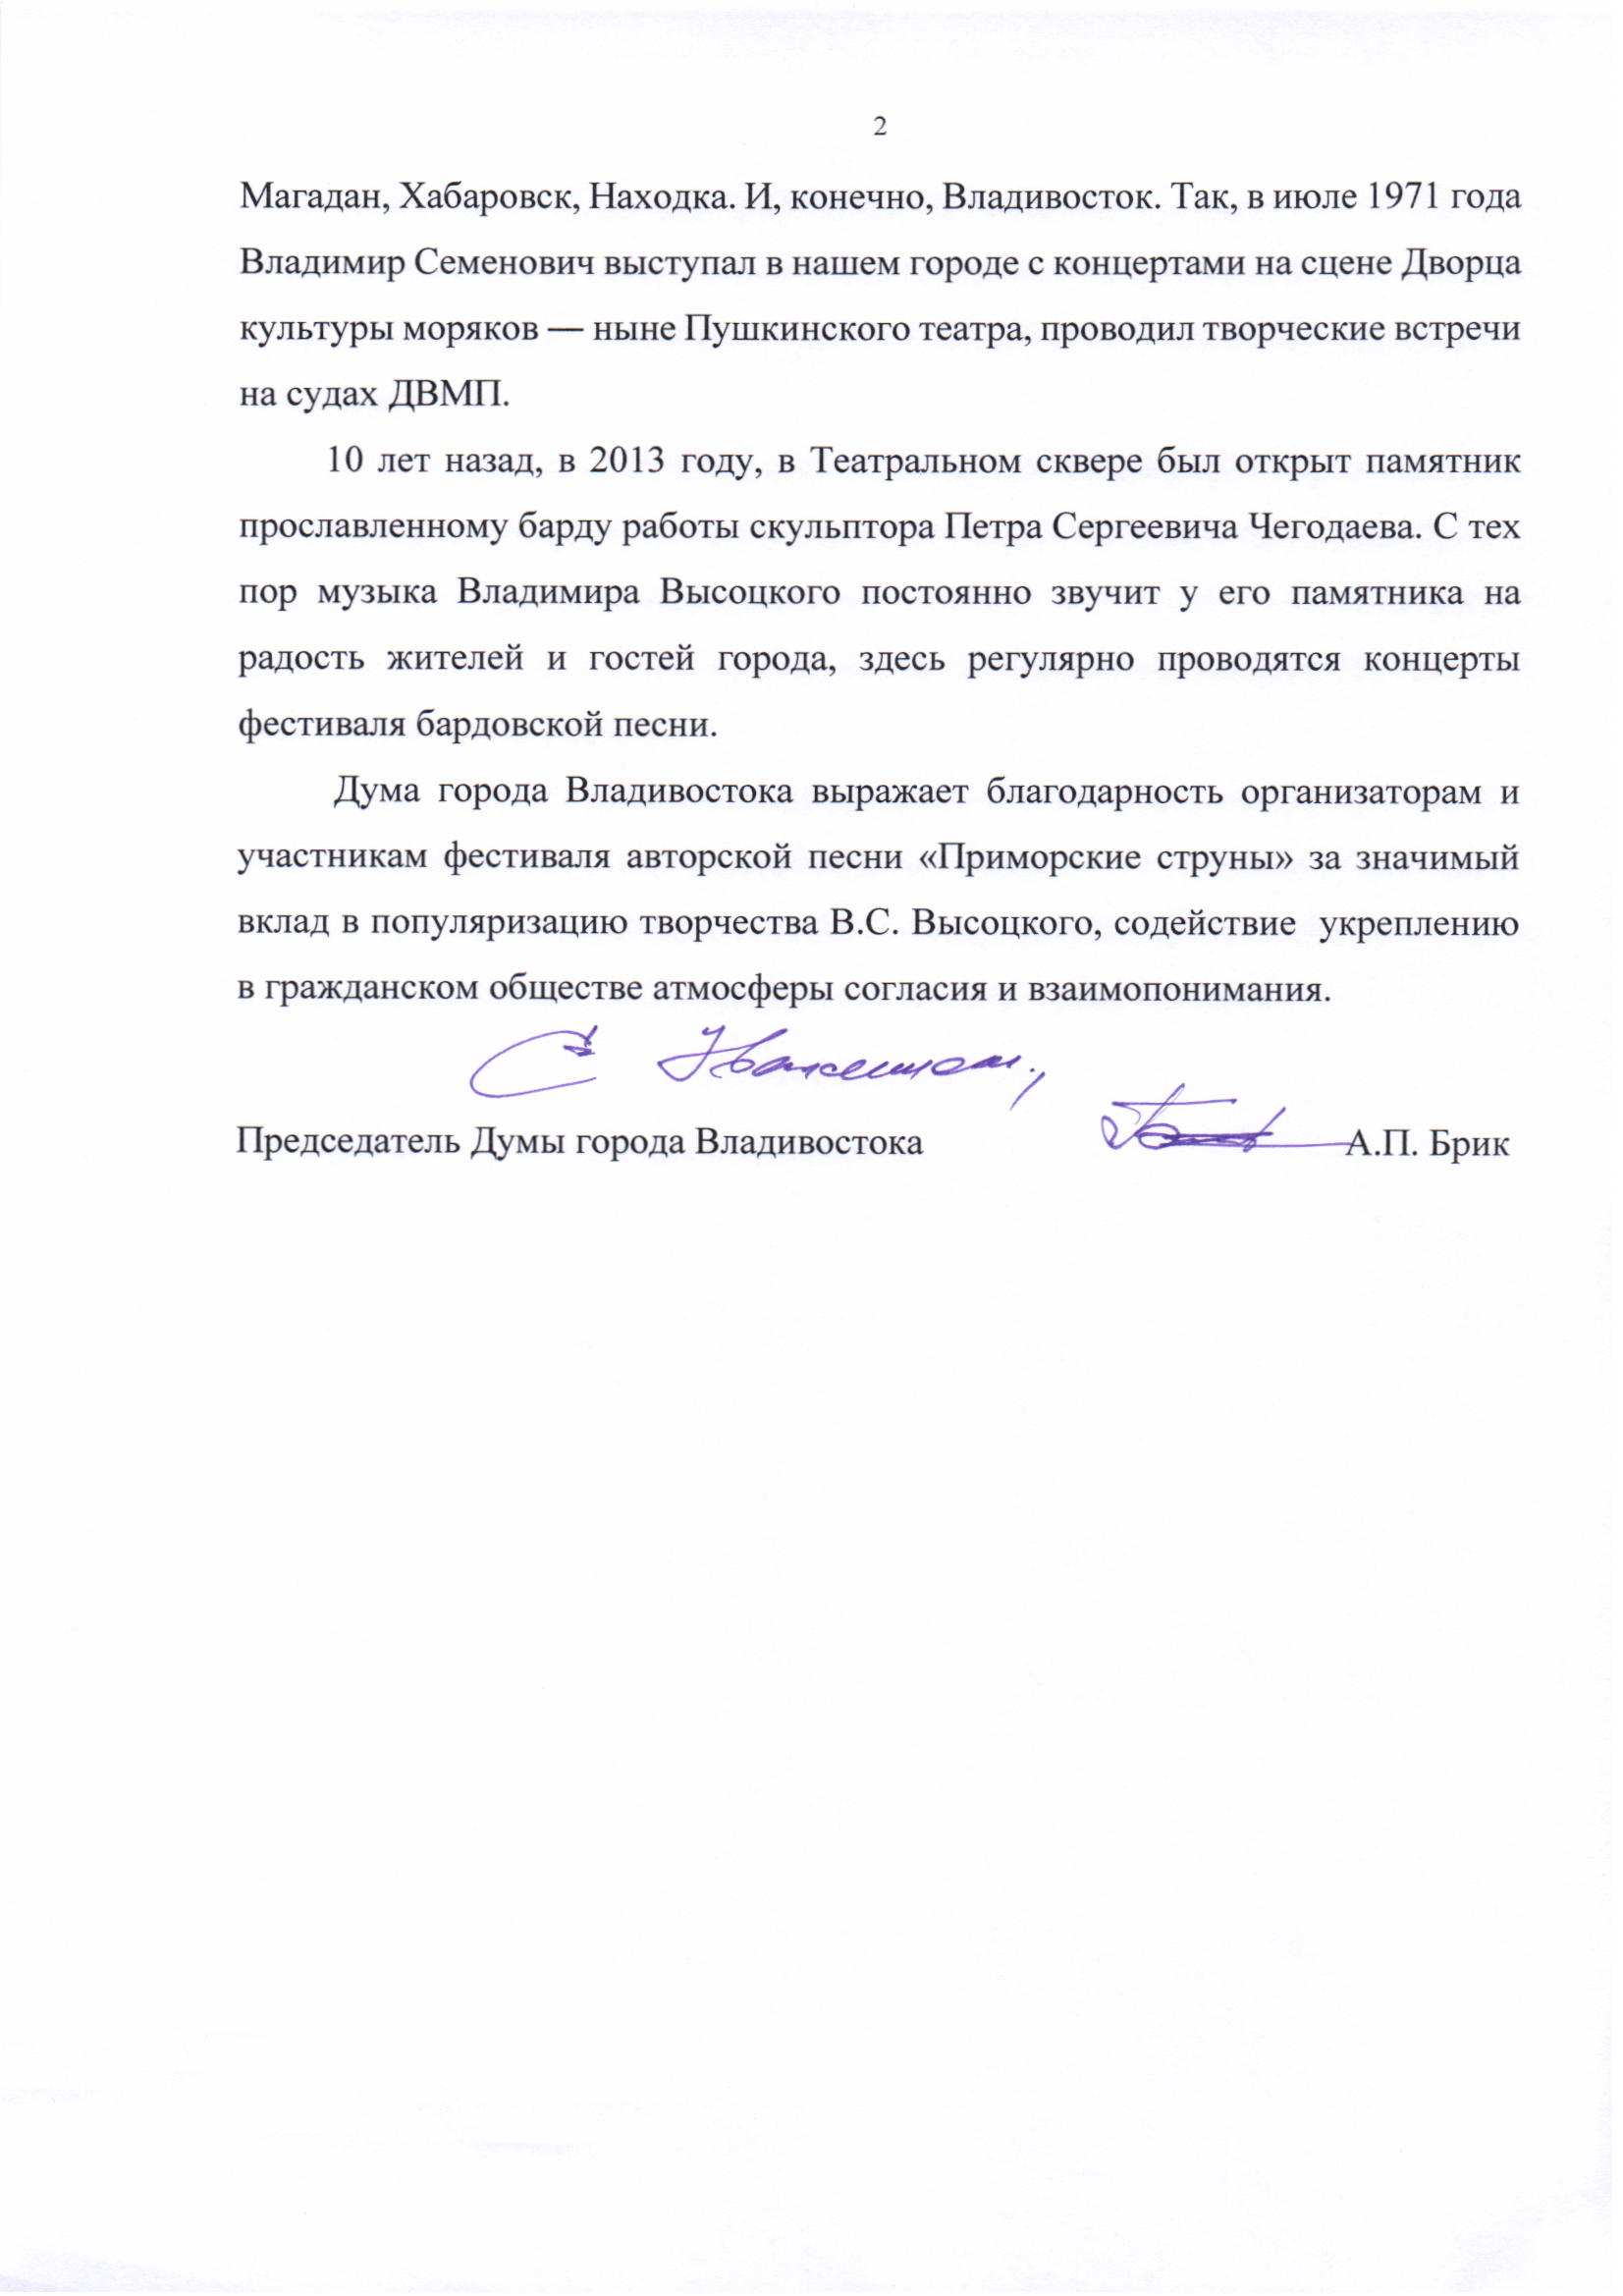 Письмо Думы Владивостока